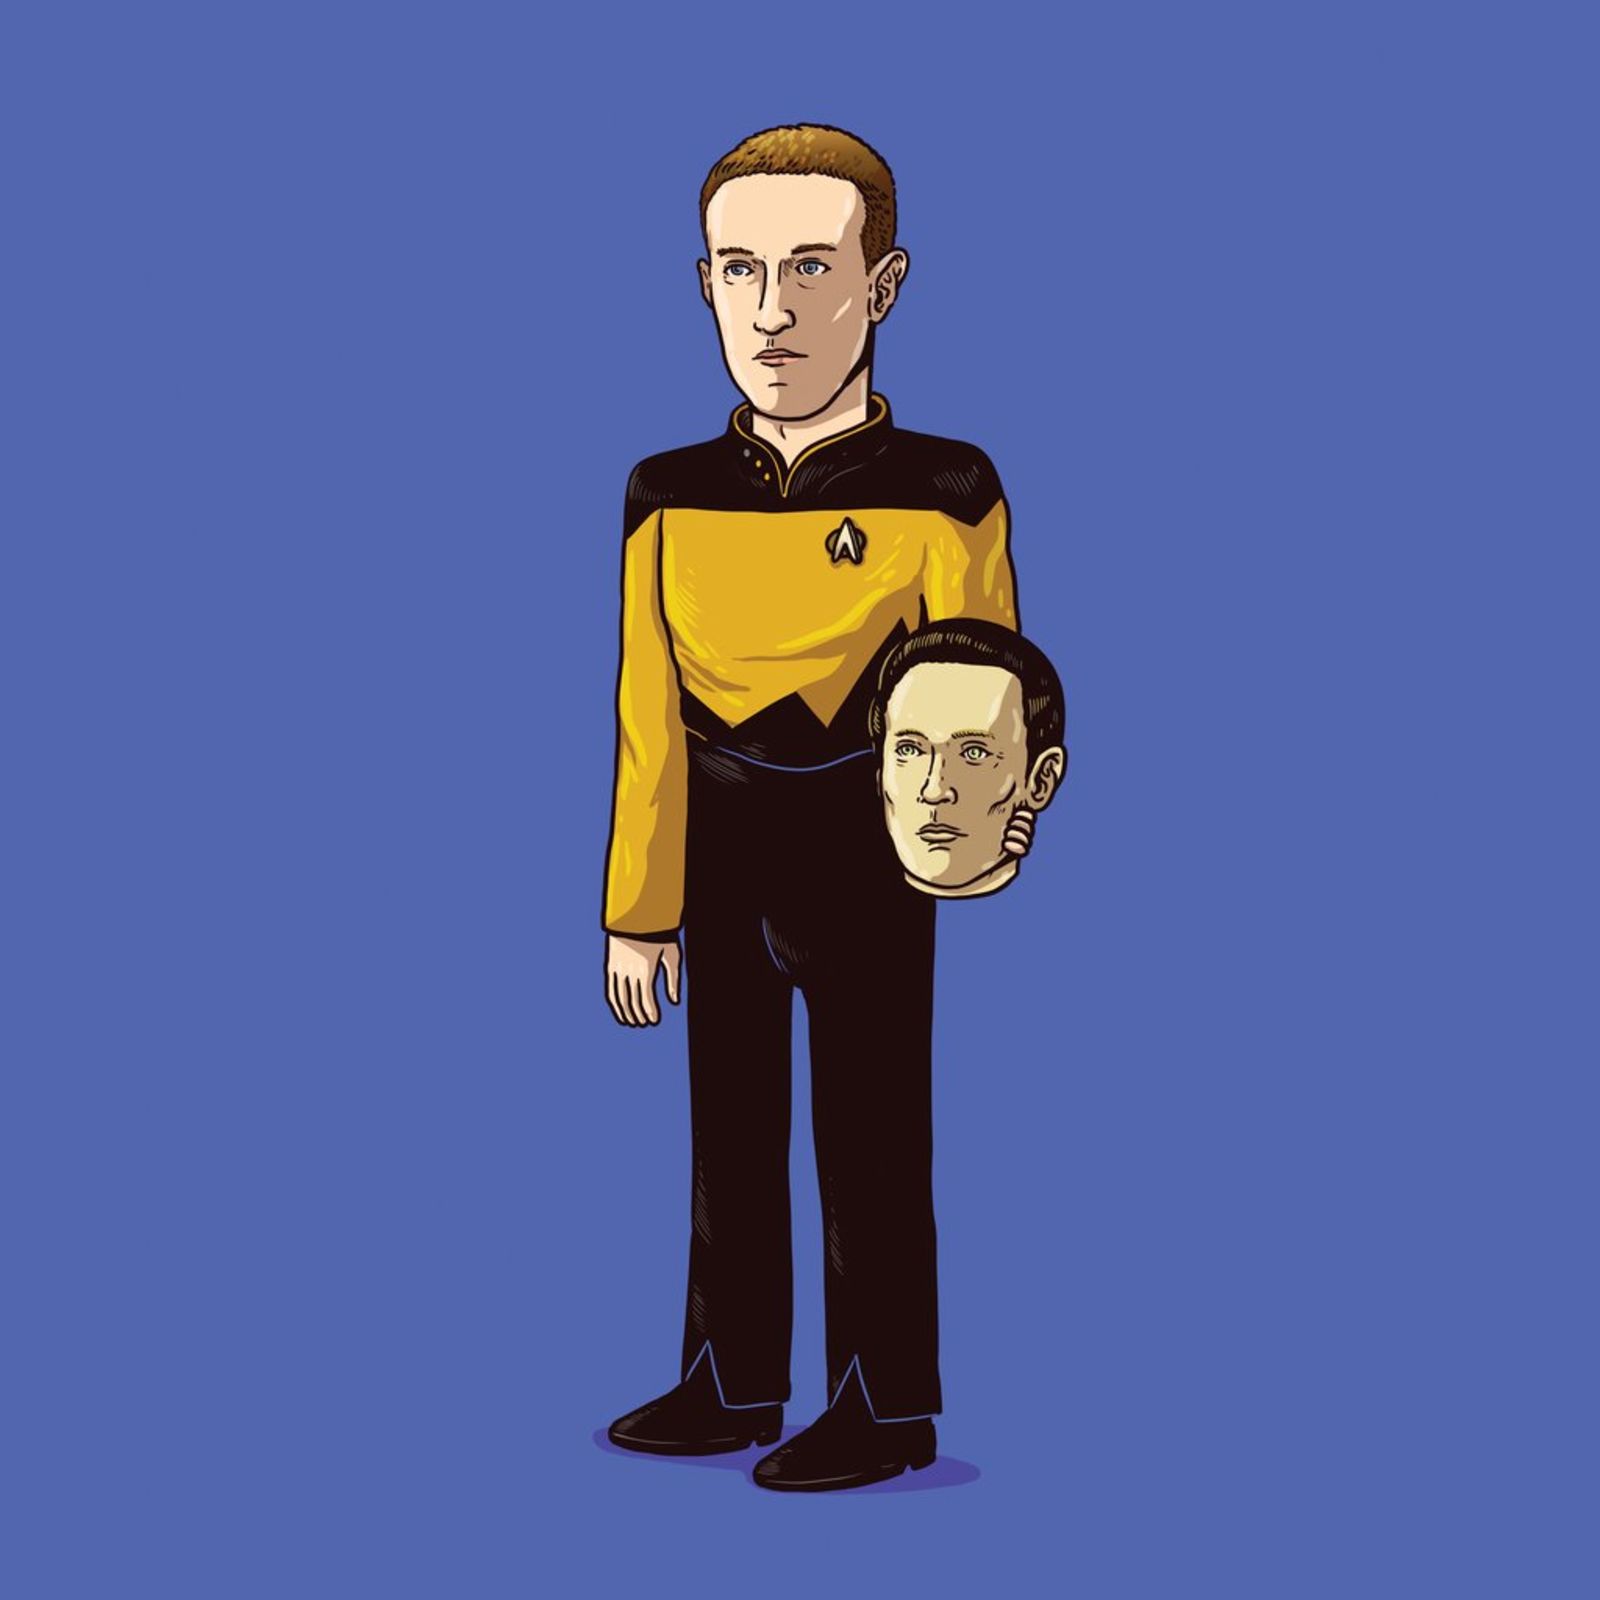 Data (Star Trek) desmascarado: Mark Zuckerberg